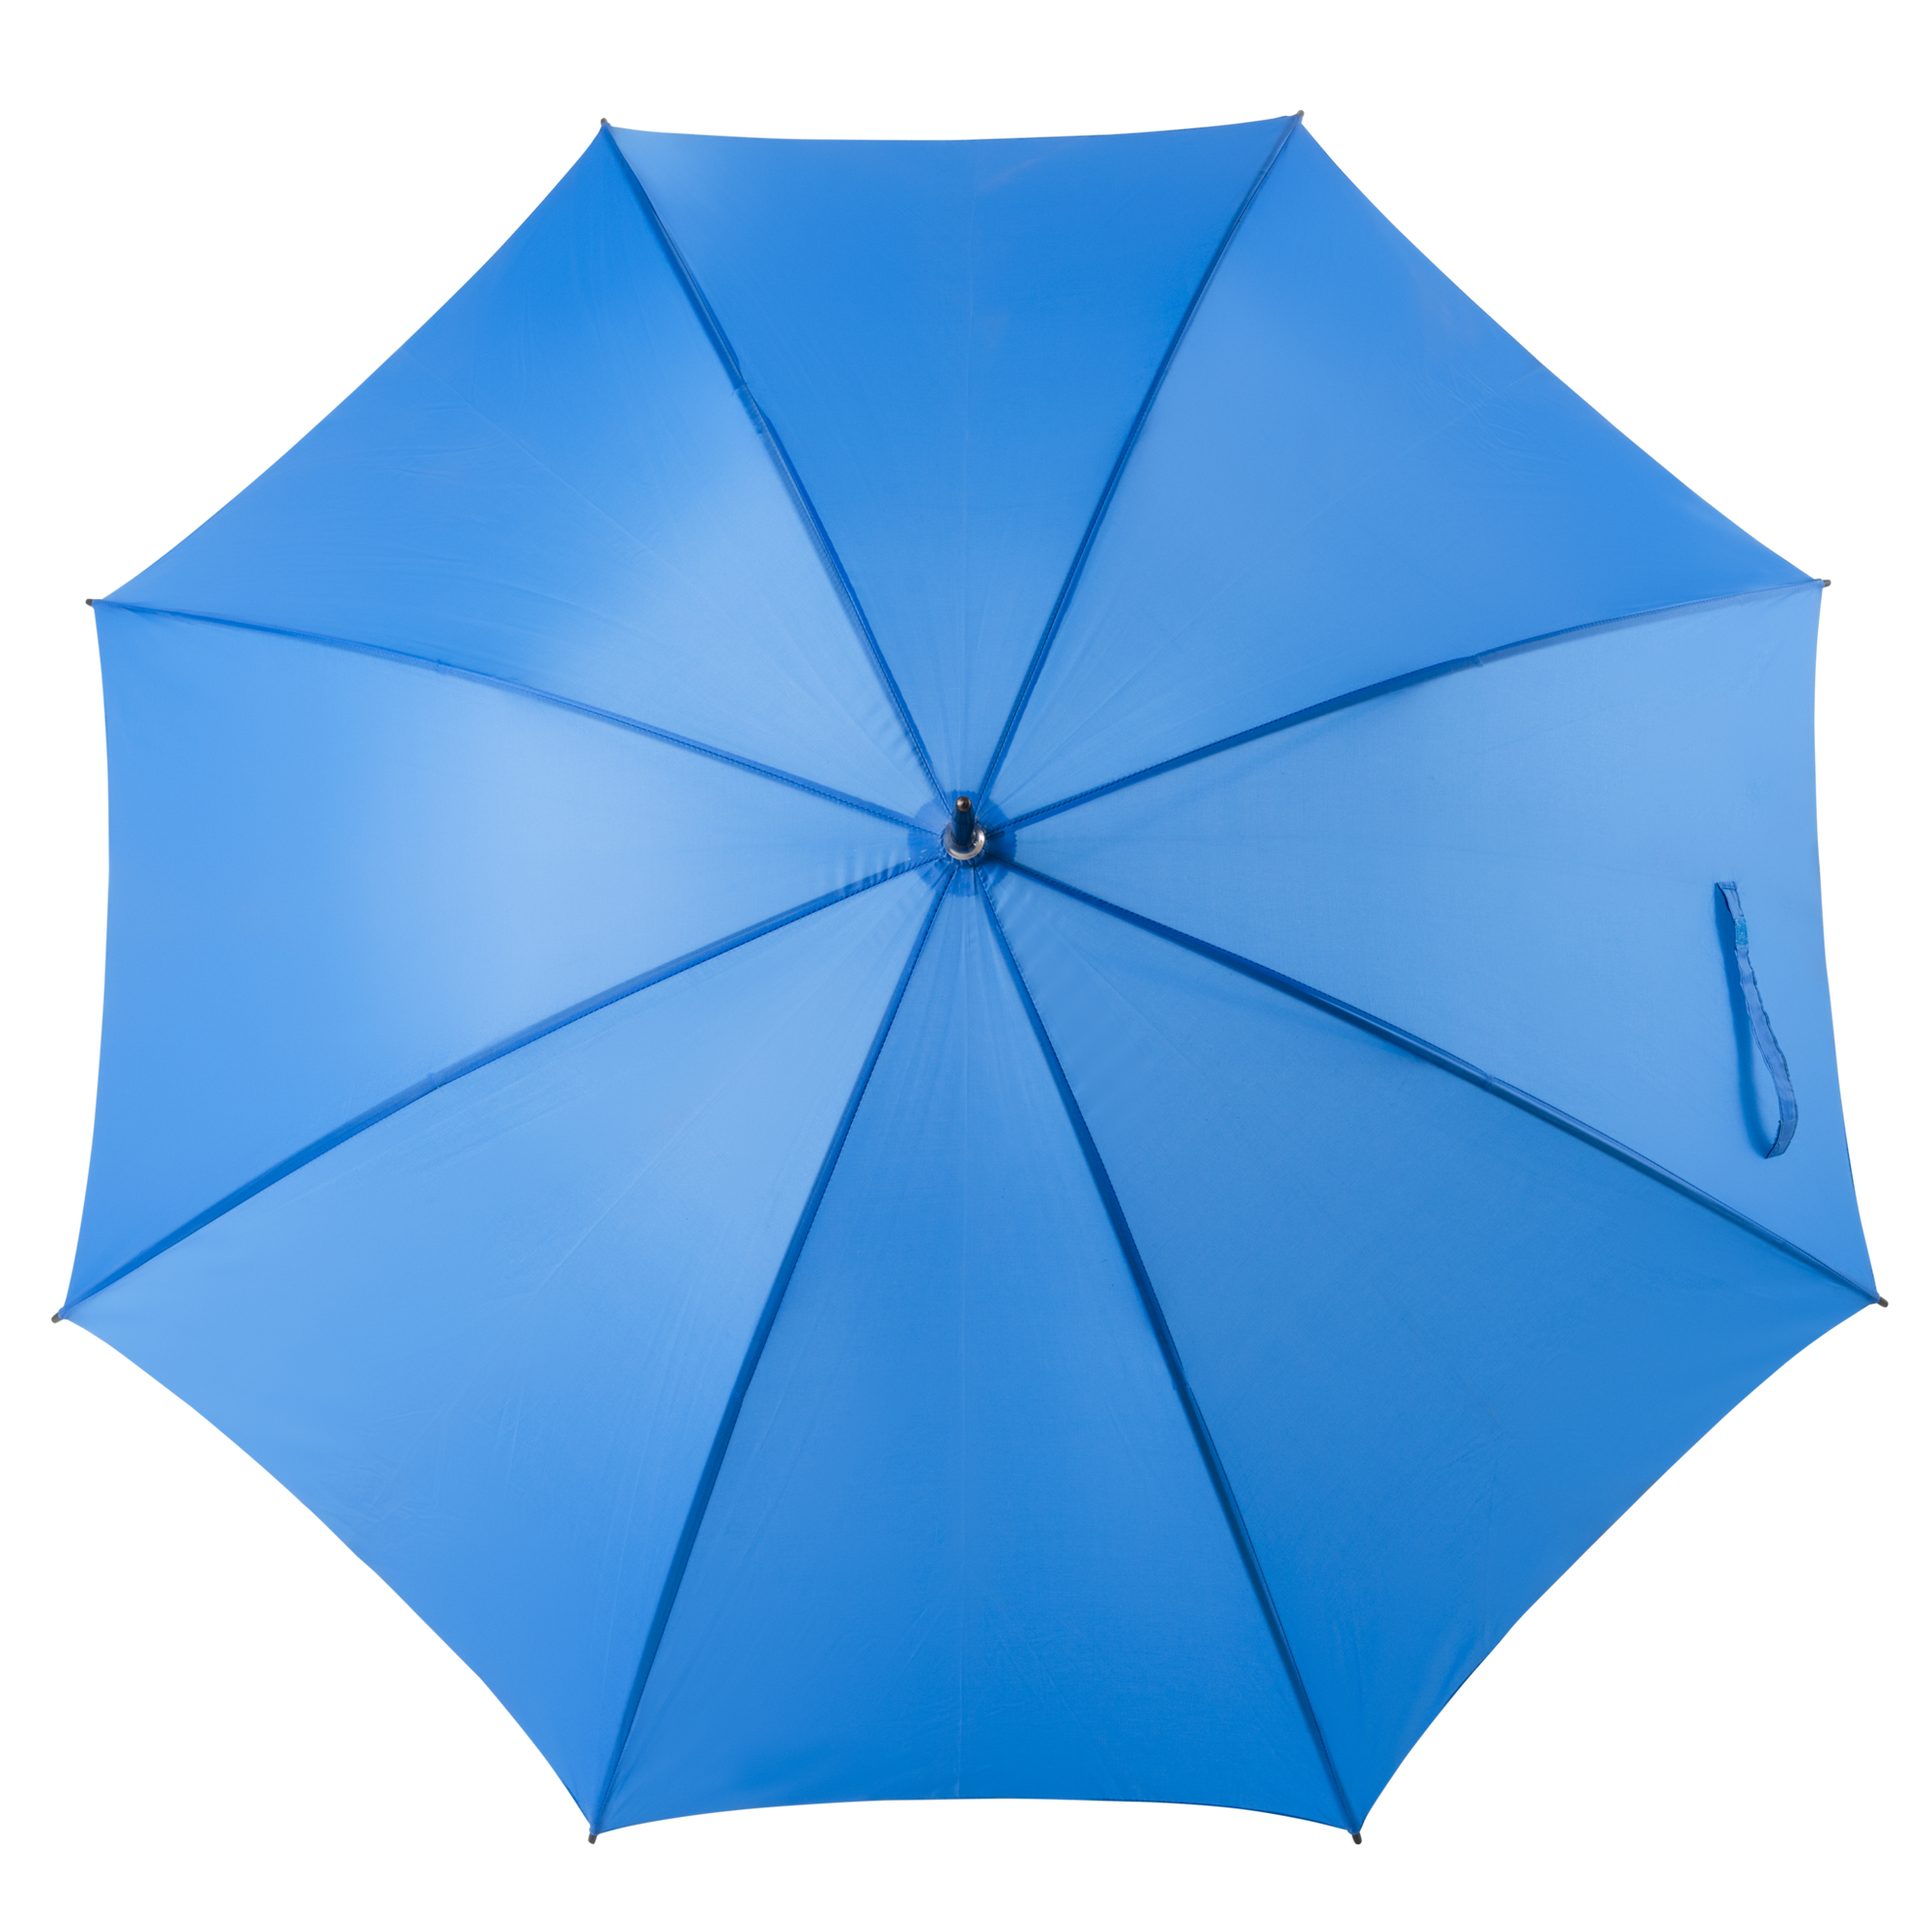 Umbrella rental - royal blue